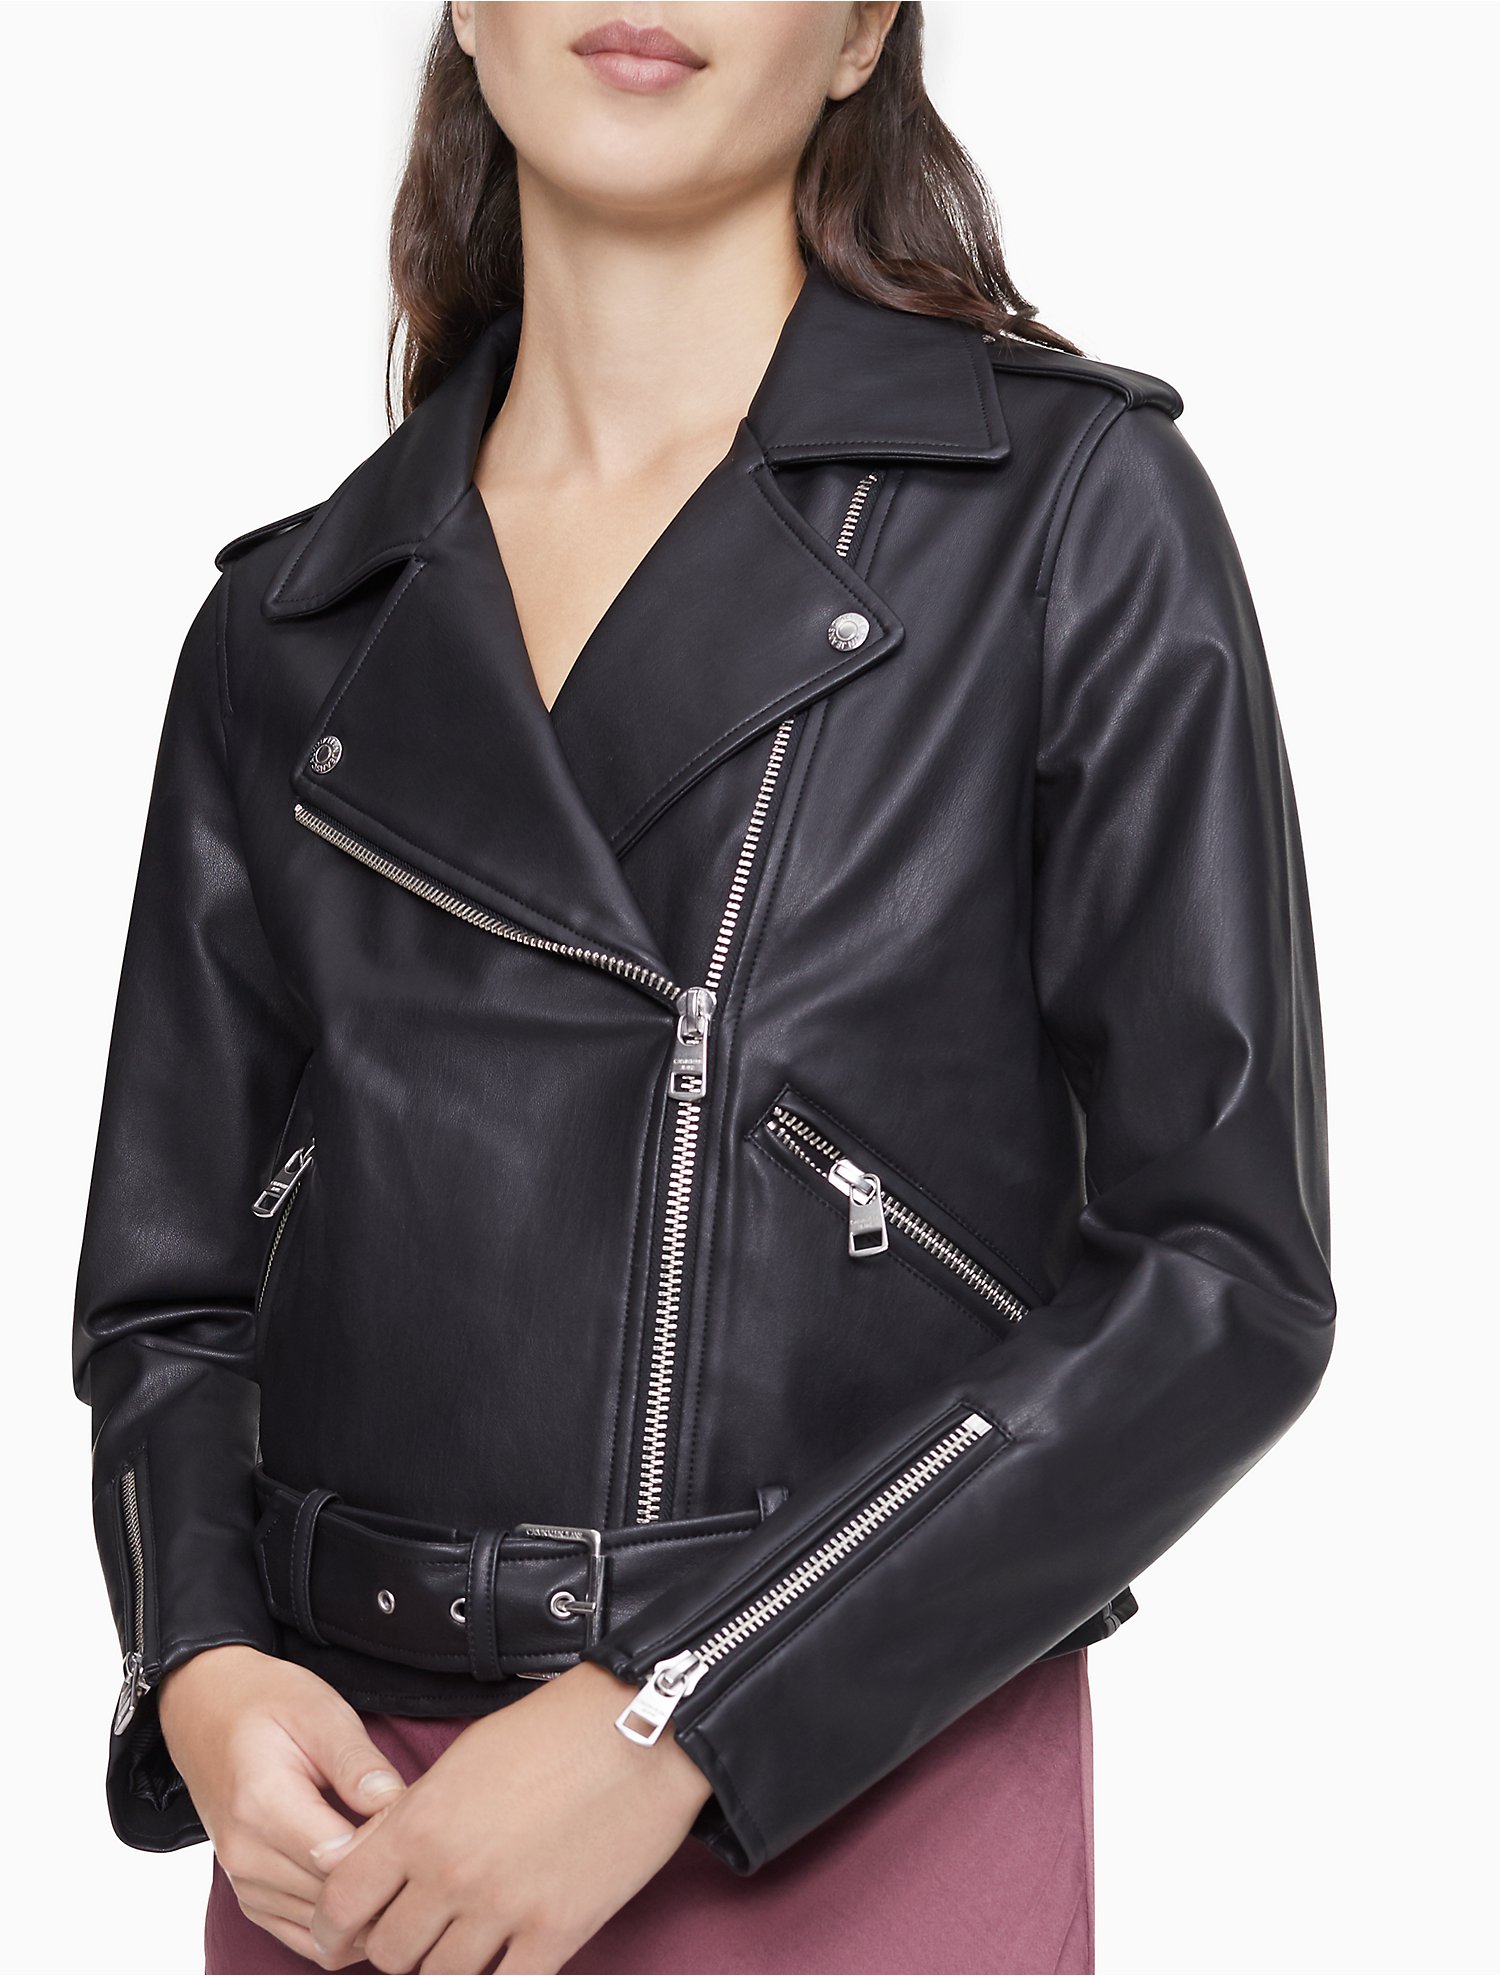 Arriba 73+ imagen calvin klein faux leather moto jacket women’s